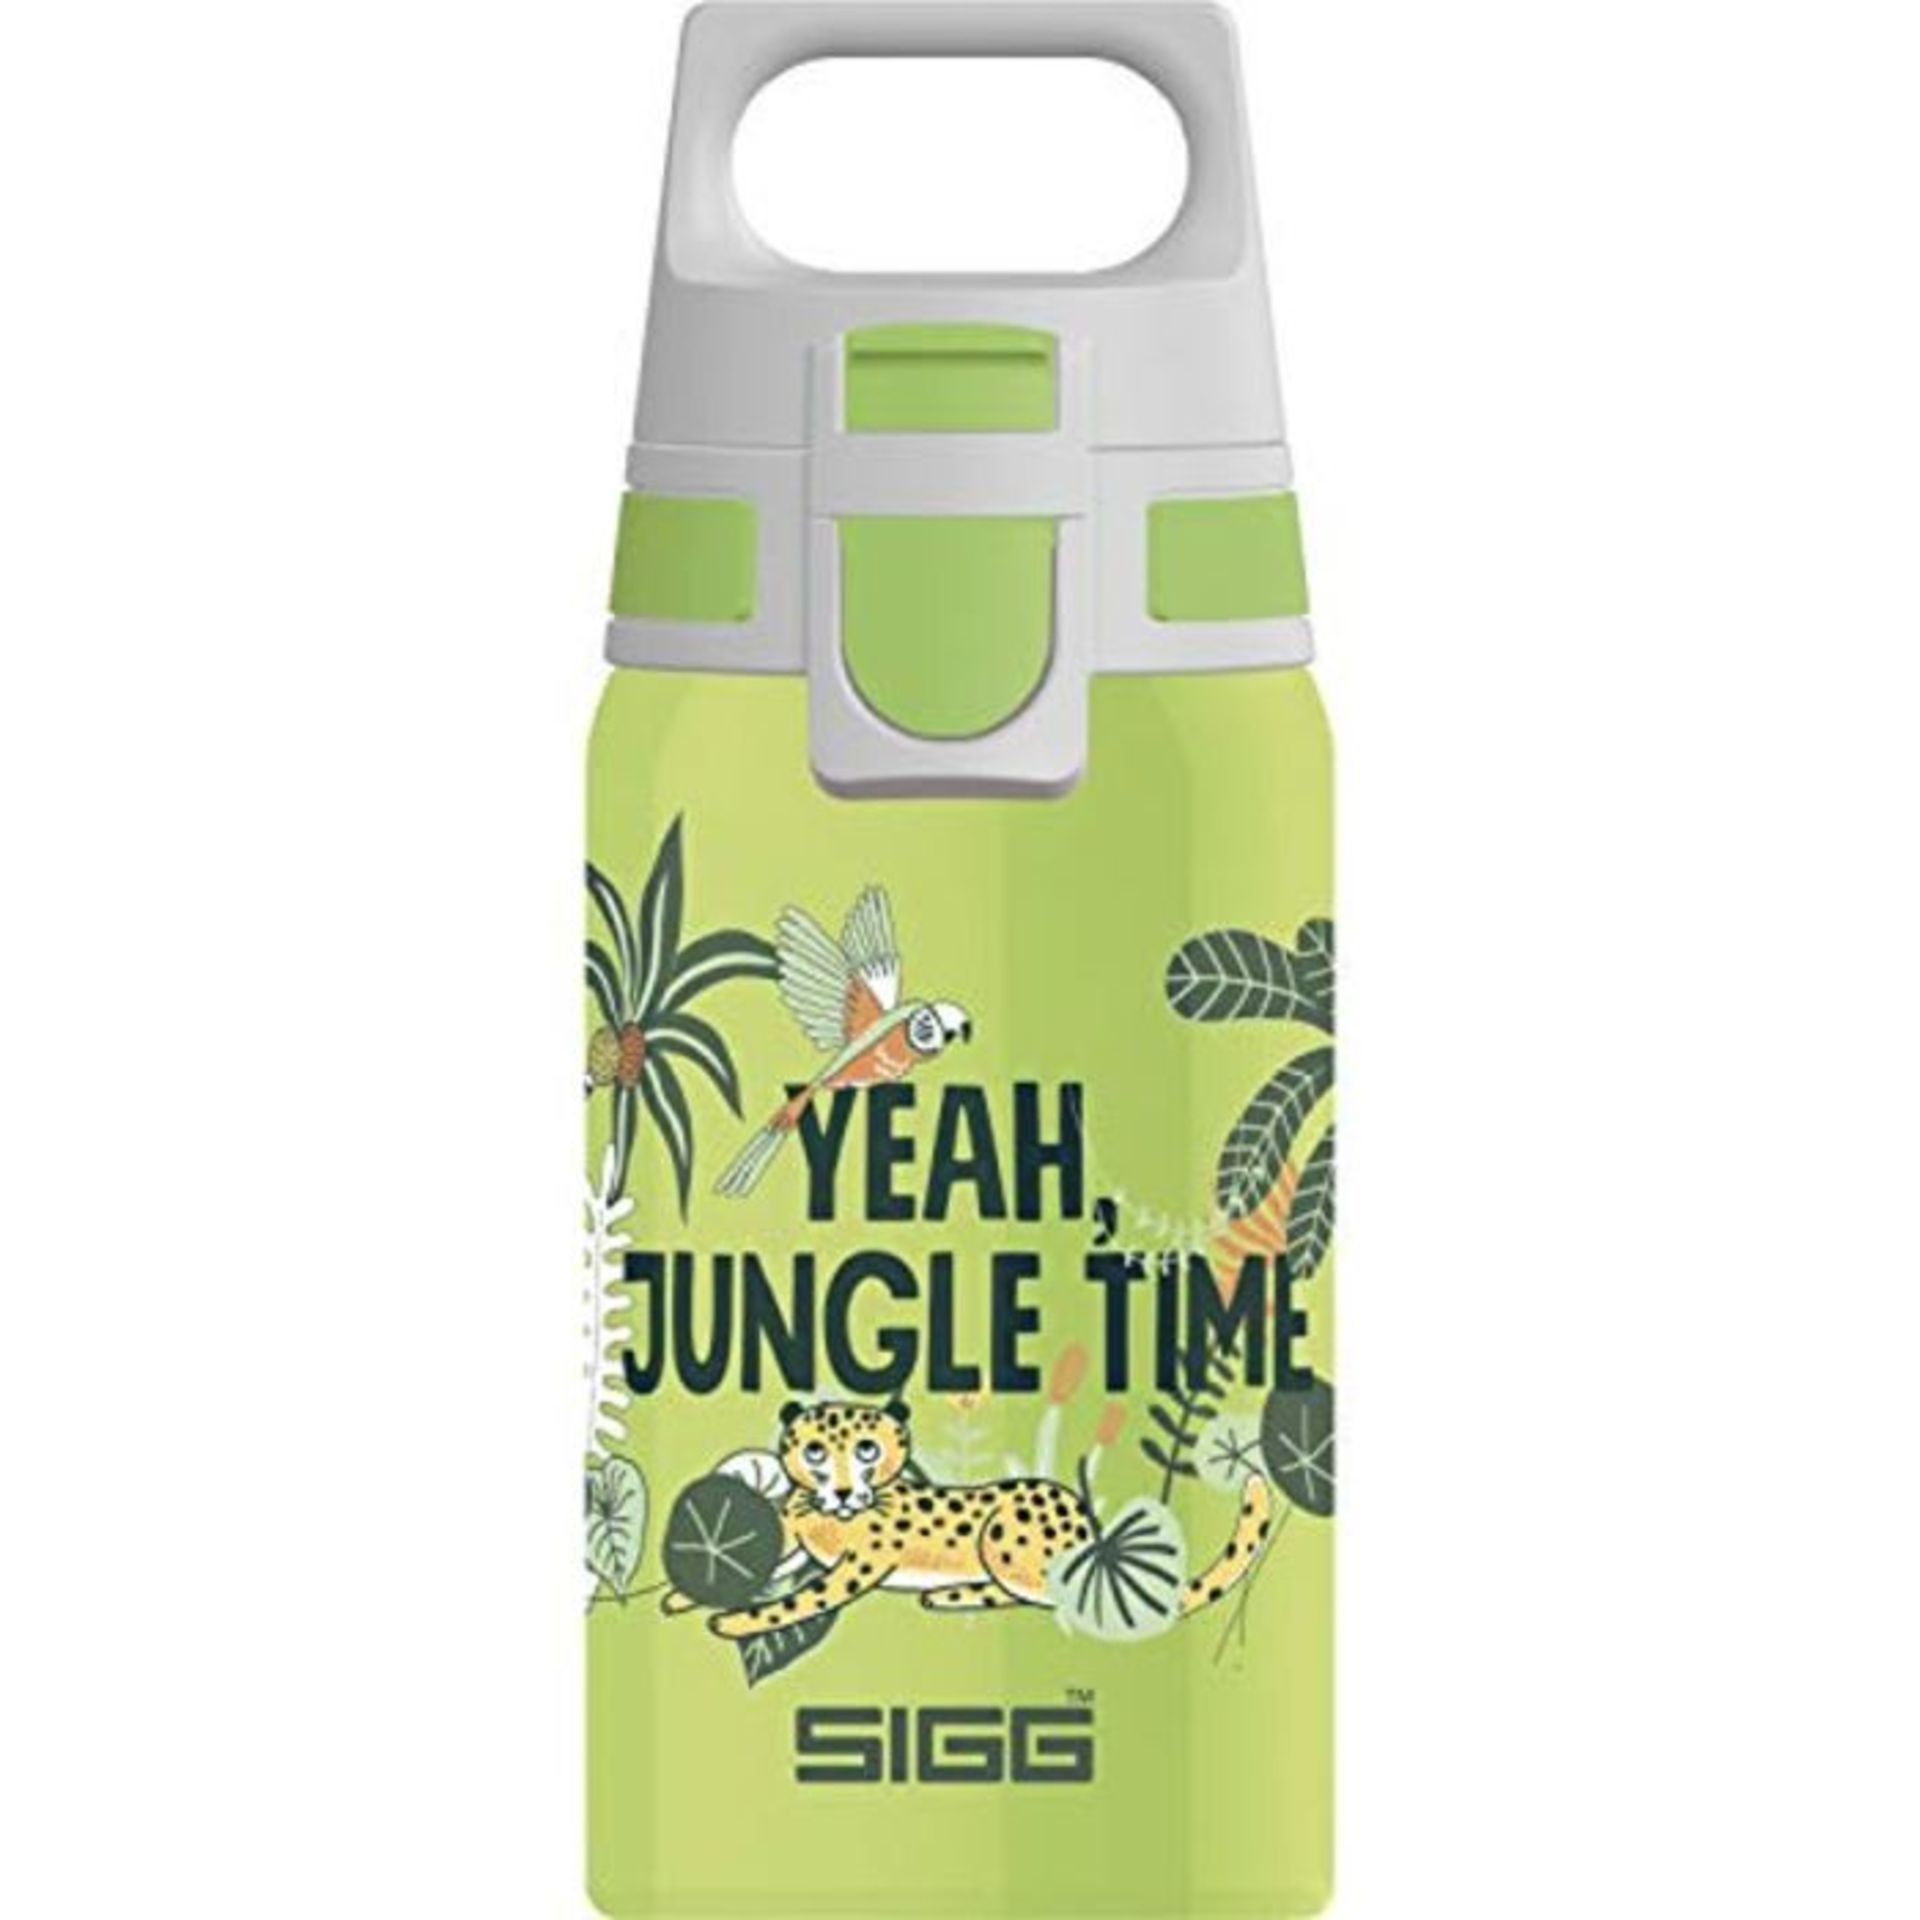 SIGG Shield One Jungle Kids Drinks Bottle (0.5 L), Stainless Steel Kids Water Bottle w